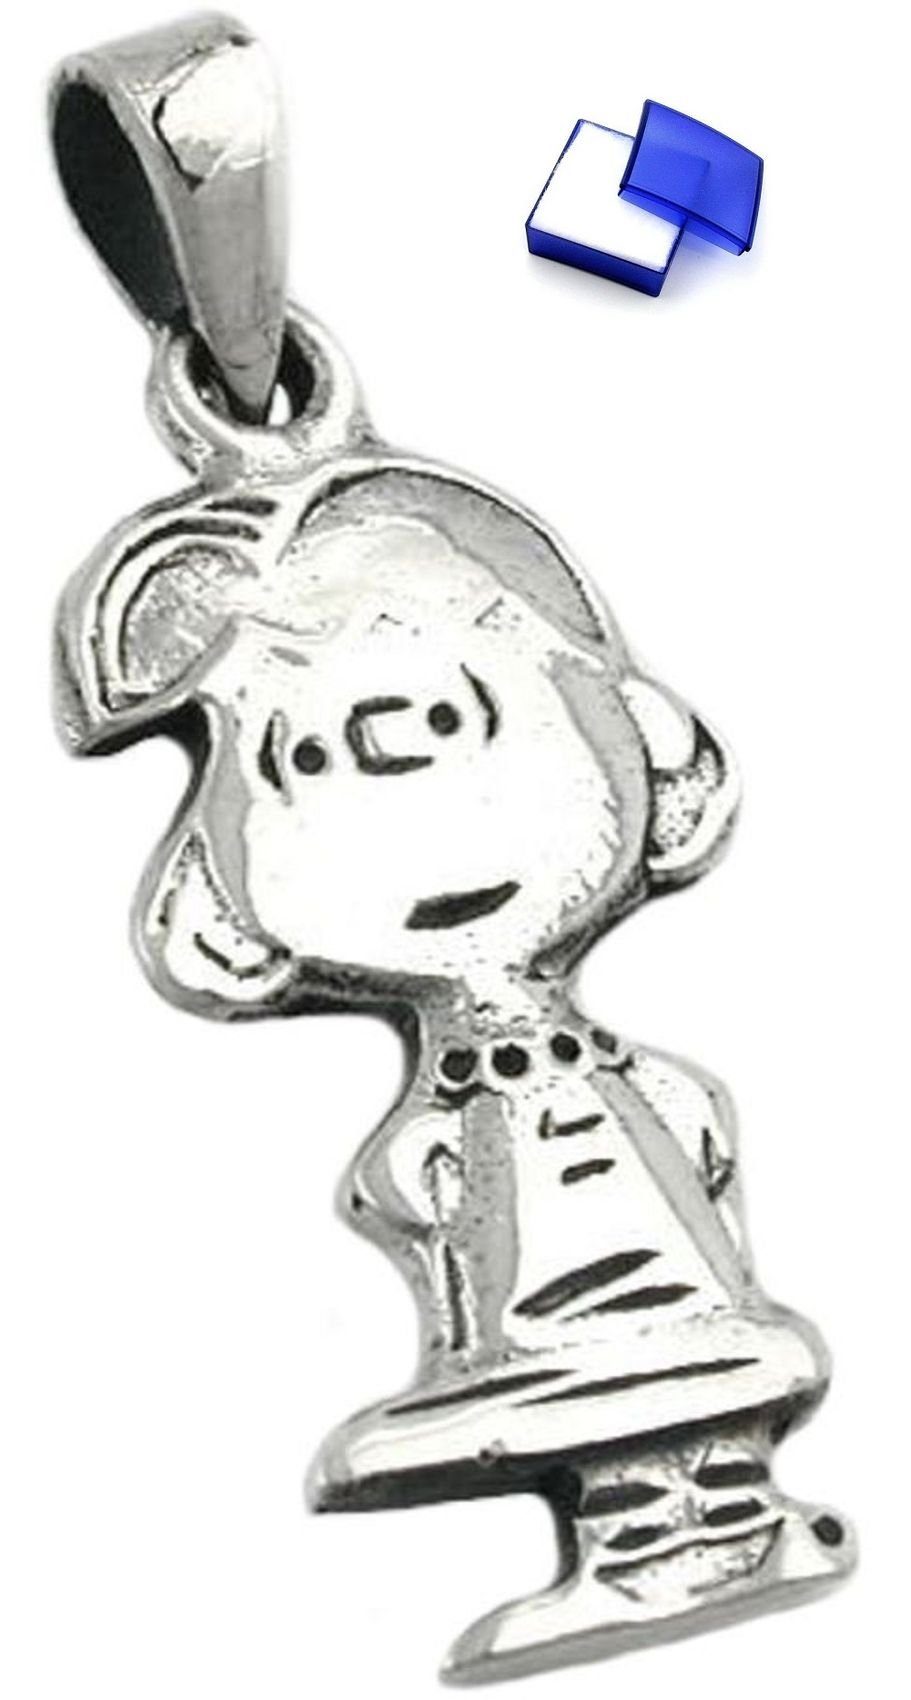 unbespielt Kettenanhänger Kettenanhänger Anhänger kleines Mädchen rhodiniert 925 Silber 25 x 11 mm inkl. kleiner Schmuckbox, Silberschmuck für Kinder